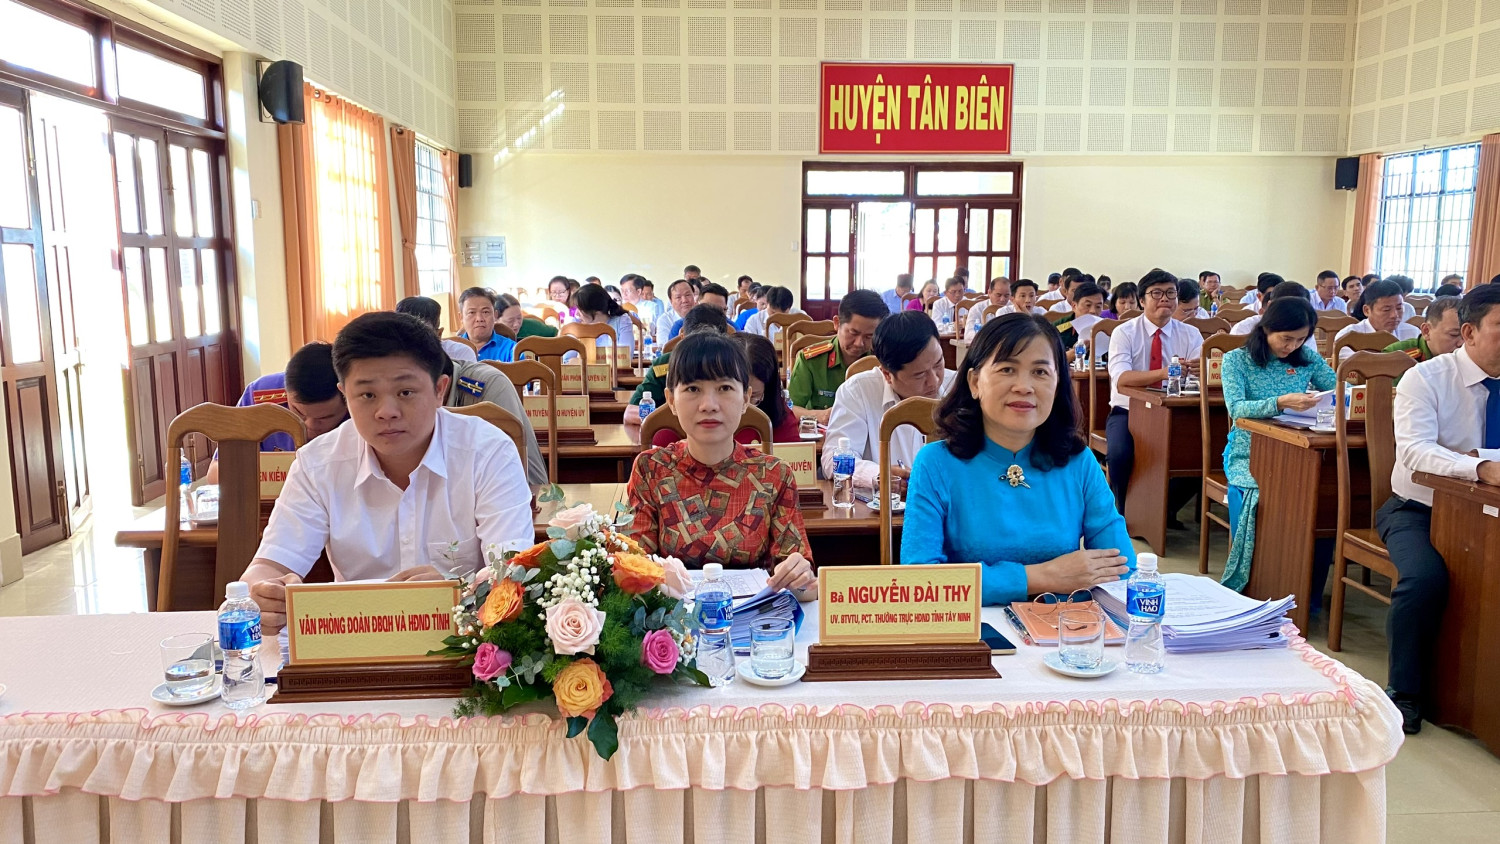 HĐND huyện Tân Biên khai mạc kỳ họp lần thứ 7 khóa XII, nhiệm kỳ 2021-2026